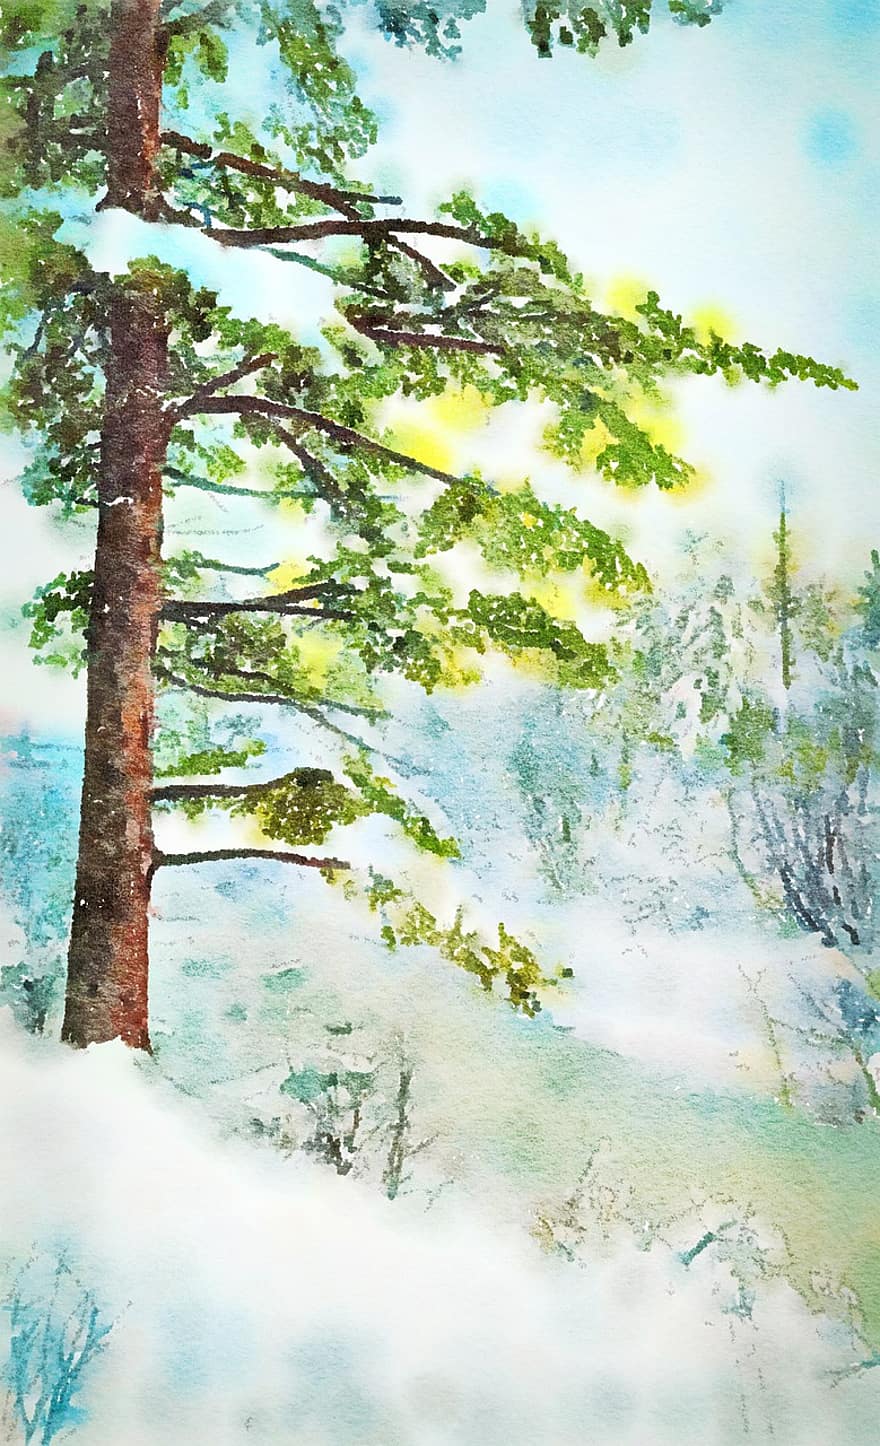 гора, дървета, гориста местност, сняг, снежно, неприветлив, лед, студ, зима, природа, Коледа